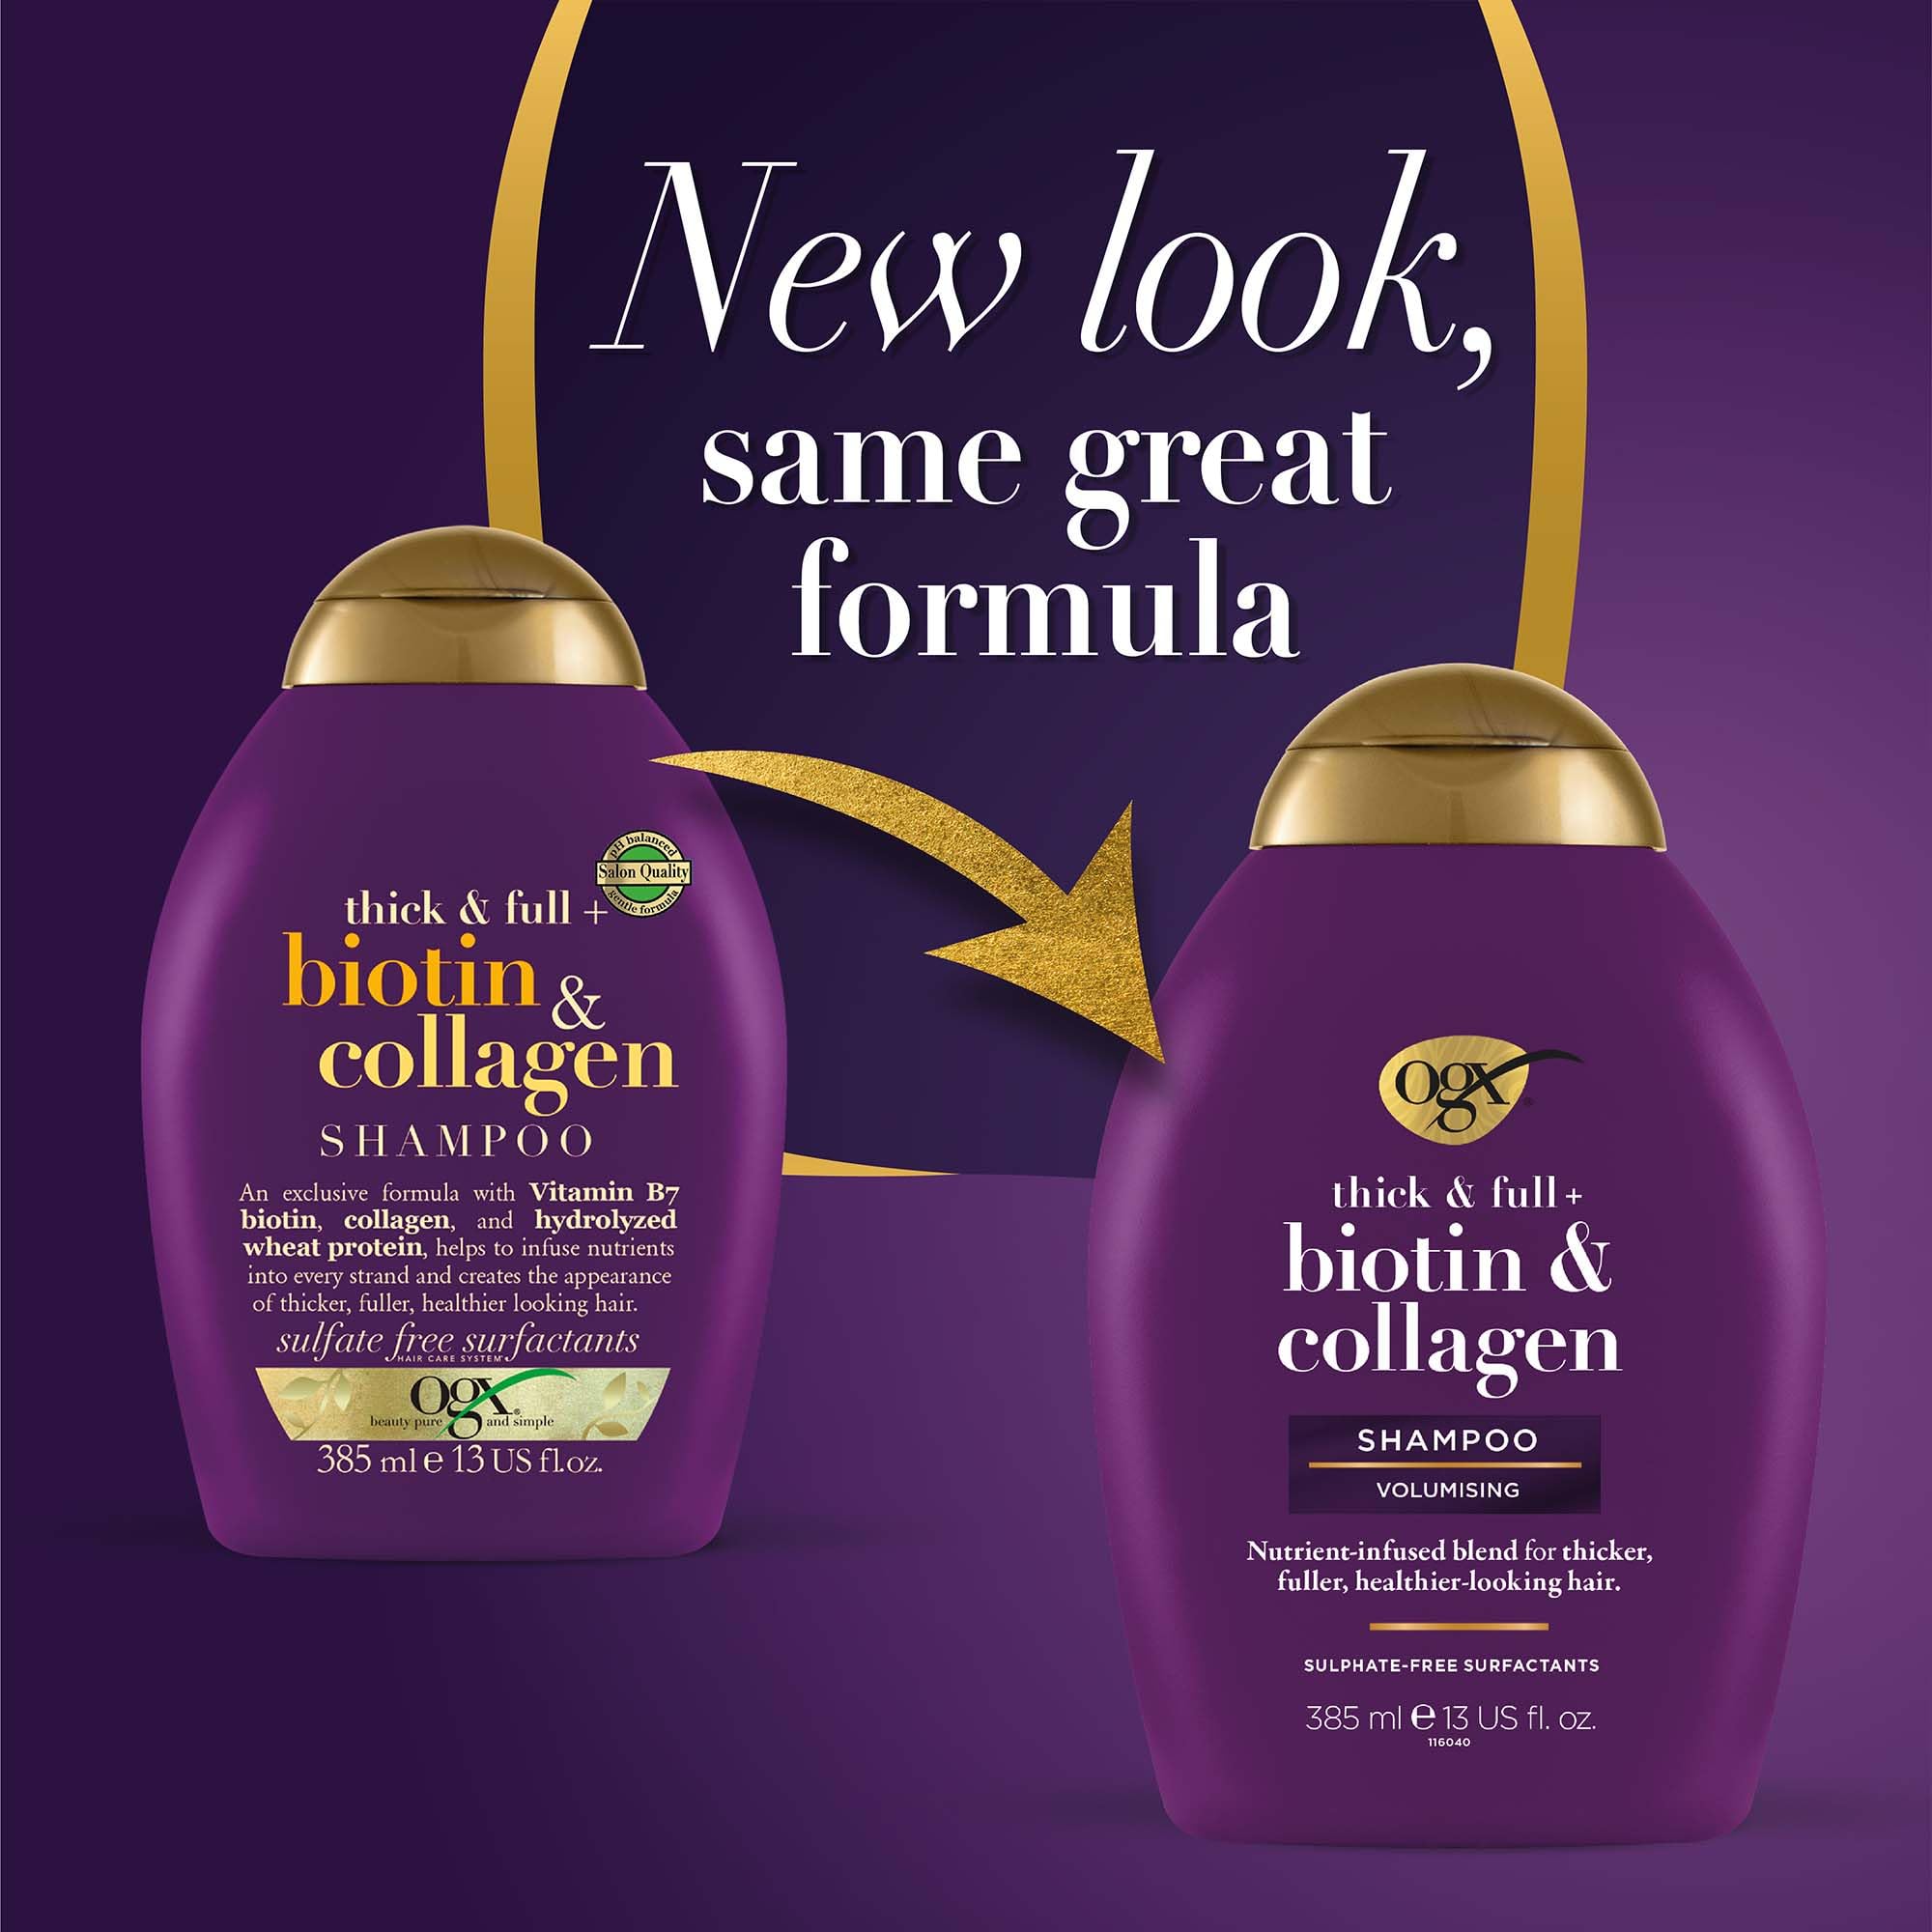 organix biotin&collagen szampon zwiększający objętość włosów szampon